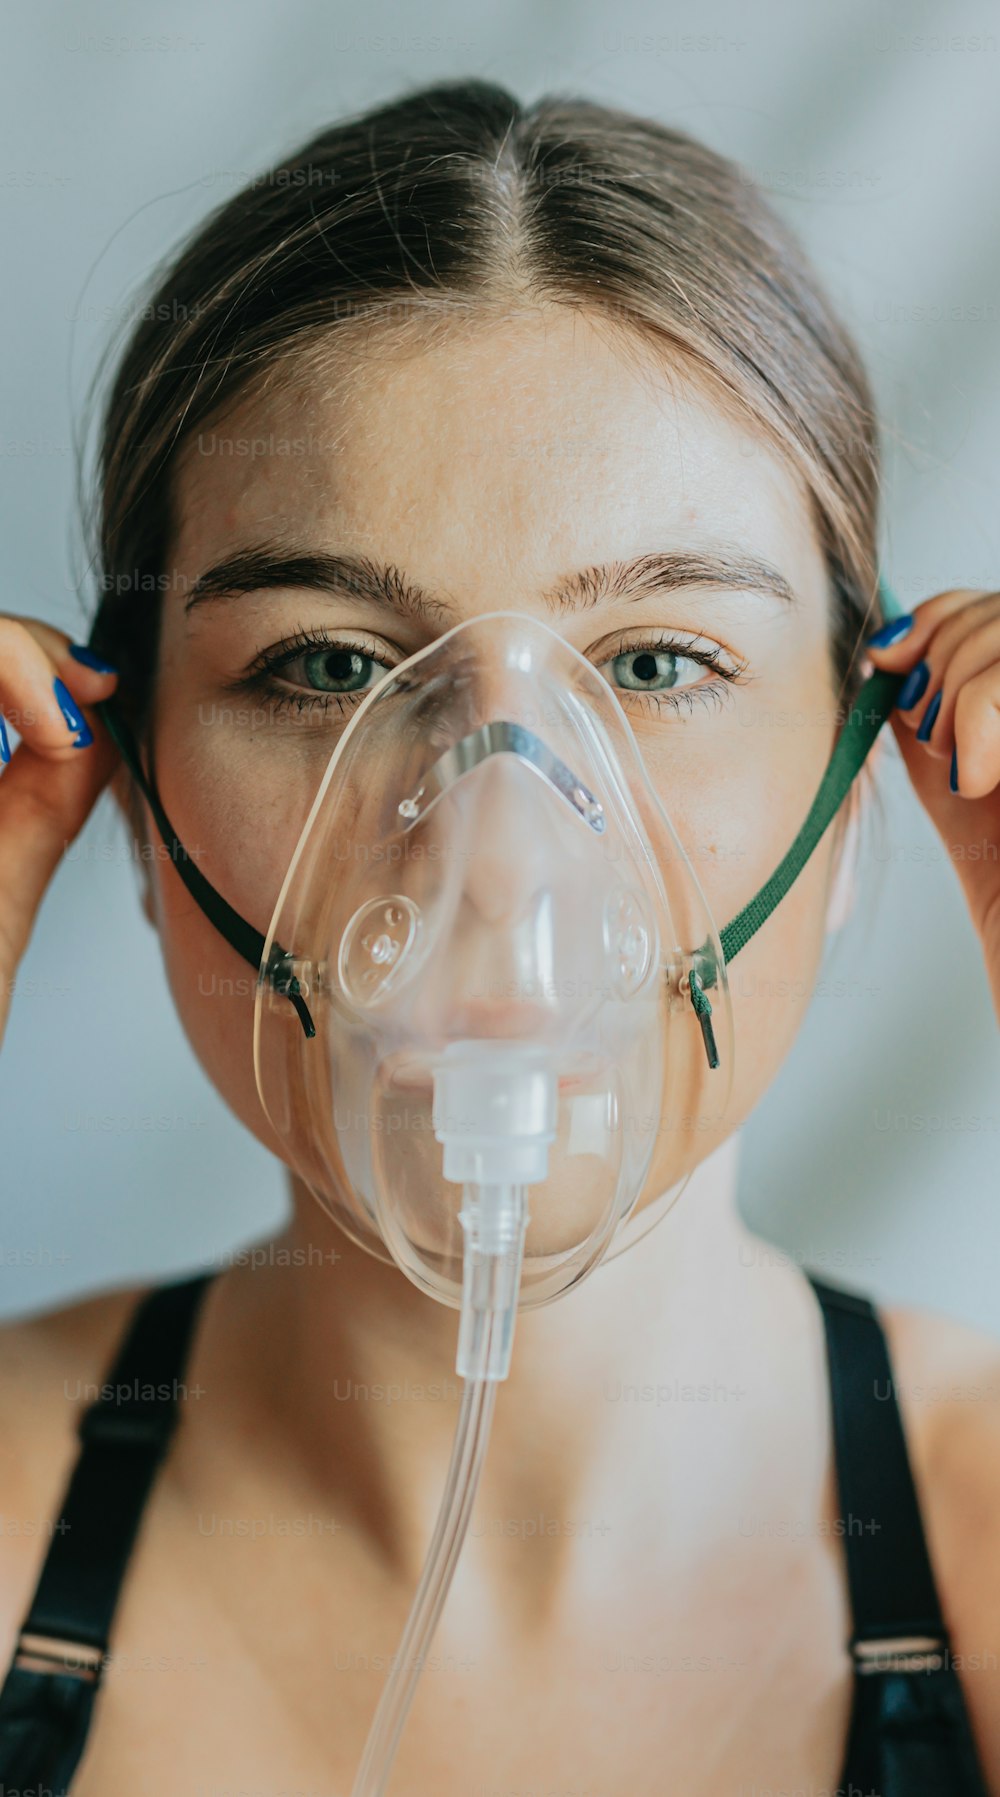 uma mulher usando uma máscara de oxigênio com um tubo de respiração ligado ao seu rosto